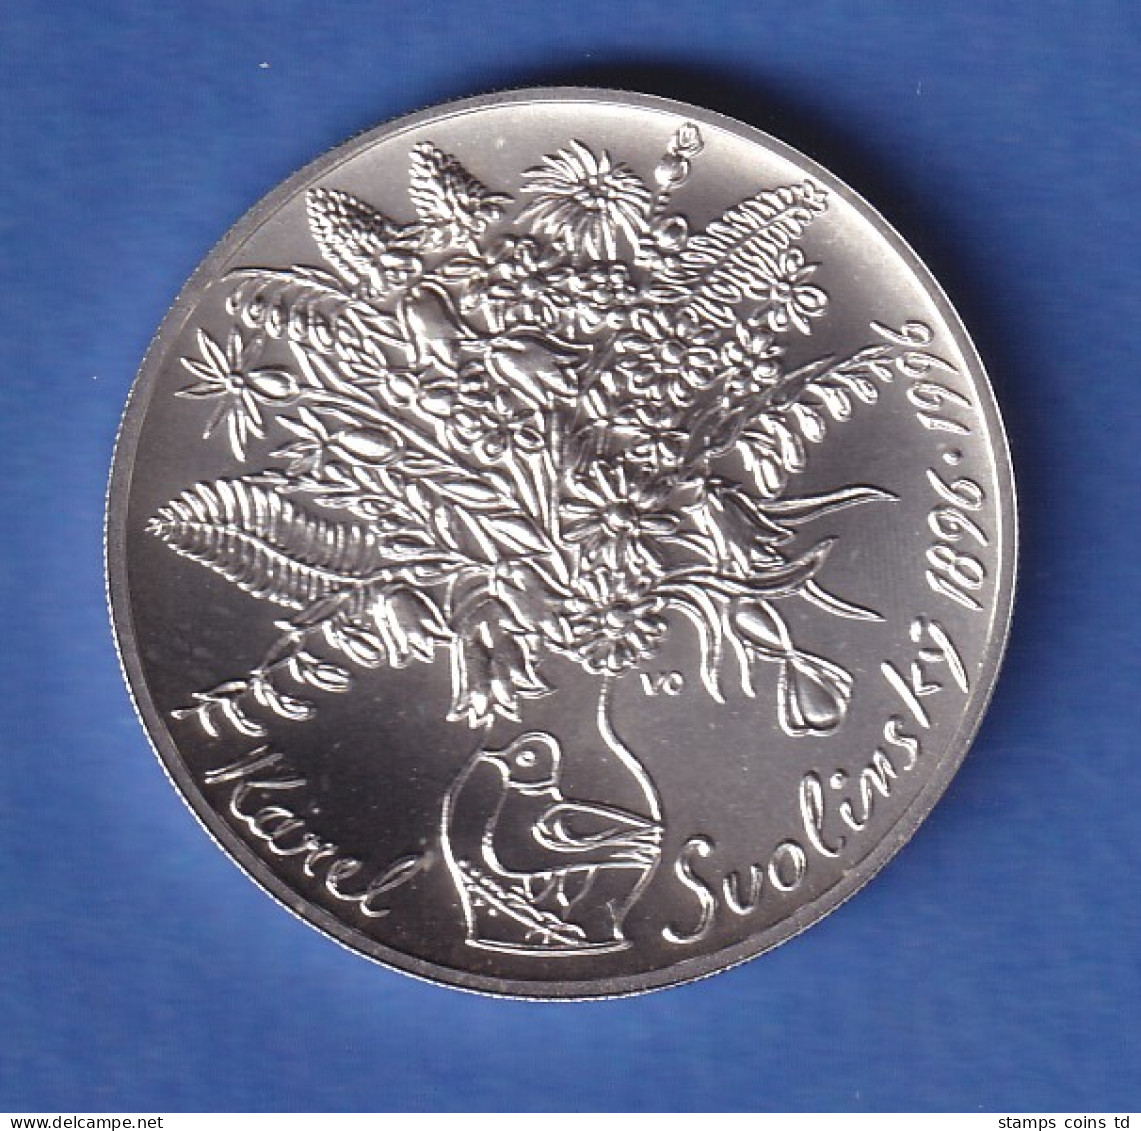 Tschechien 1996 Silbermünze 200 Kronen 100. Geburtstag Von Karel Svolinský Stg - Tchéquie